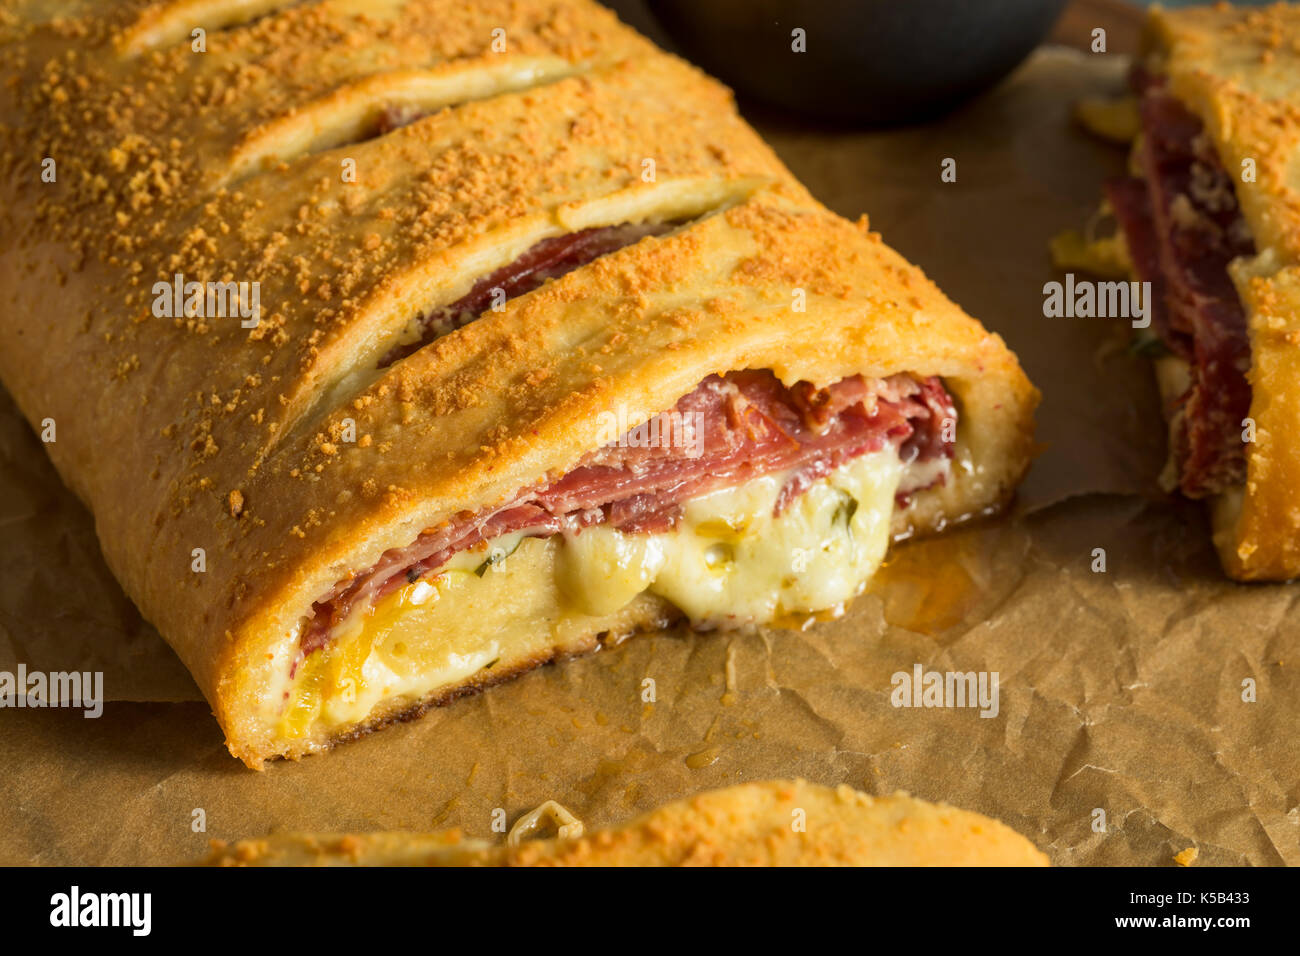 Homemade Cheesy and Meaty Italian Stromboli with Marinara Sauce Stock Photo